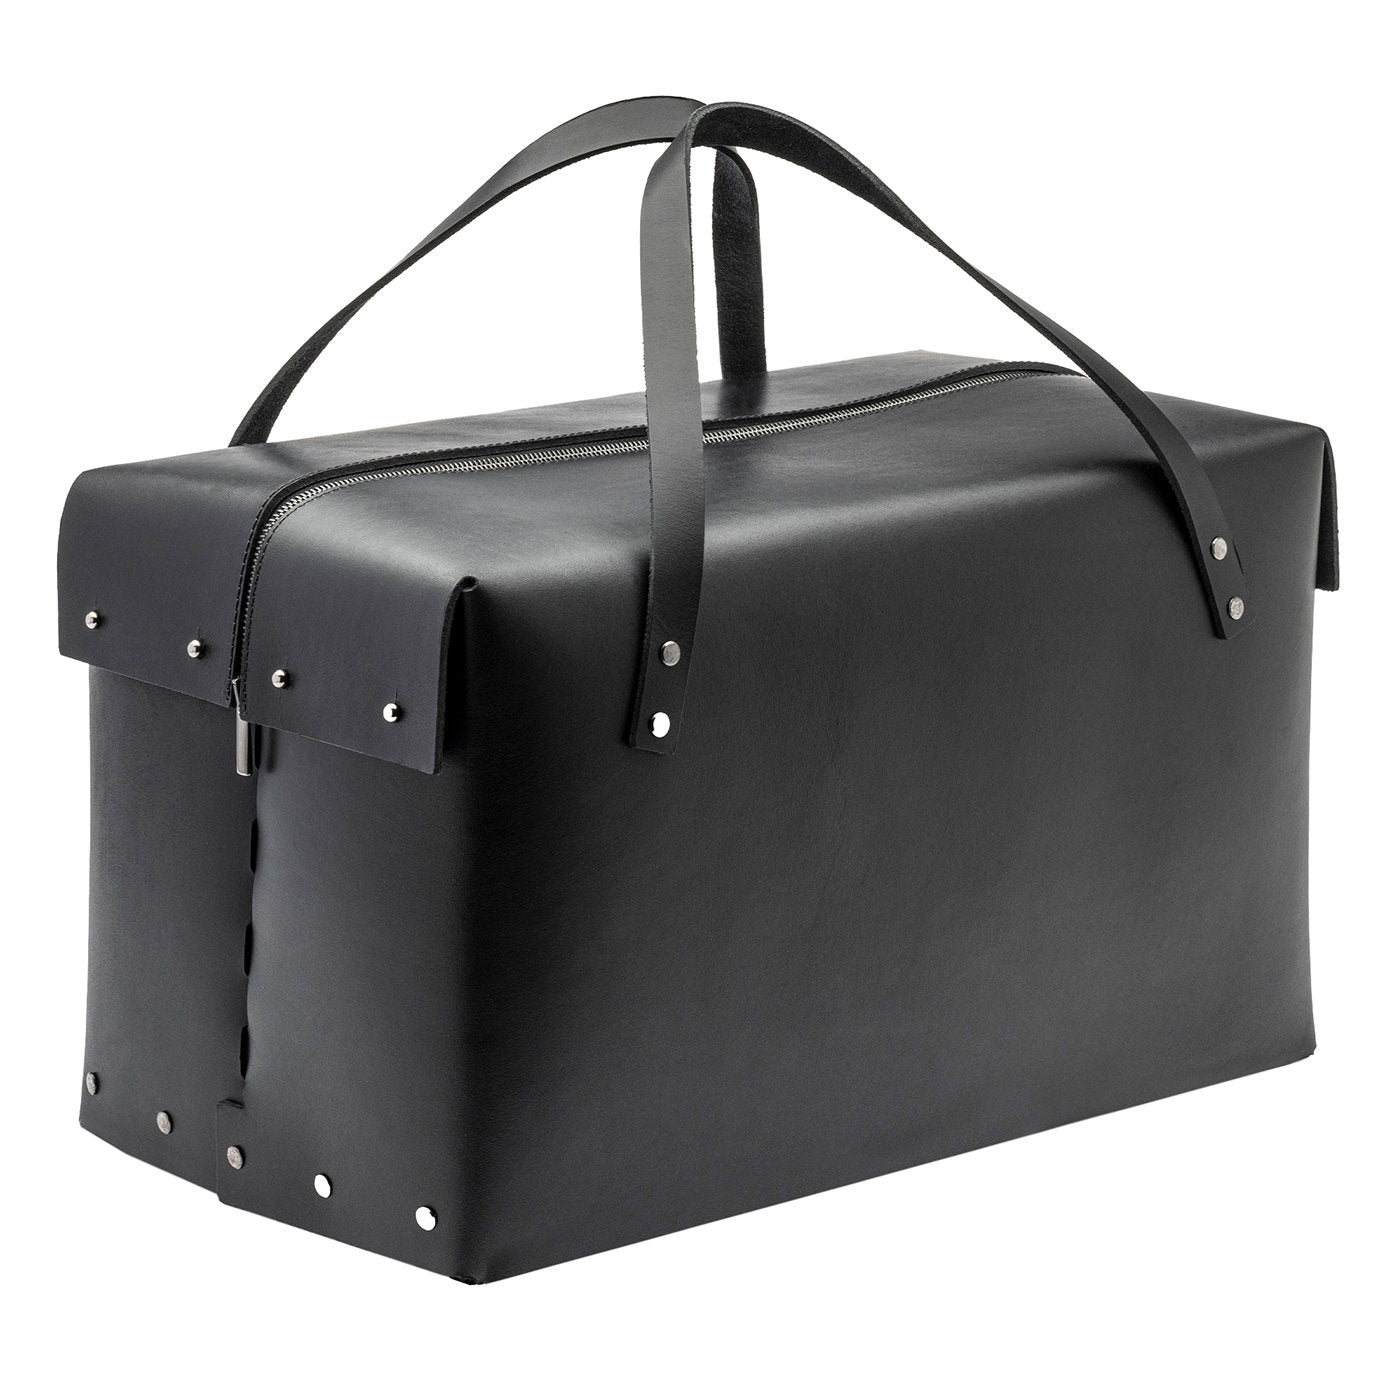 Black Leather Weekender Bag - Main view